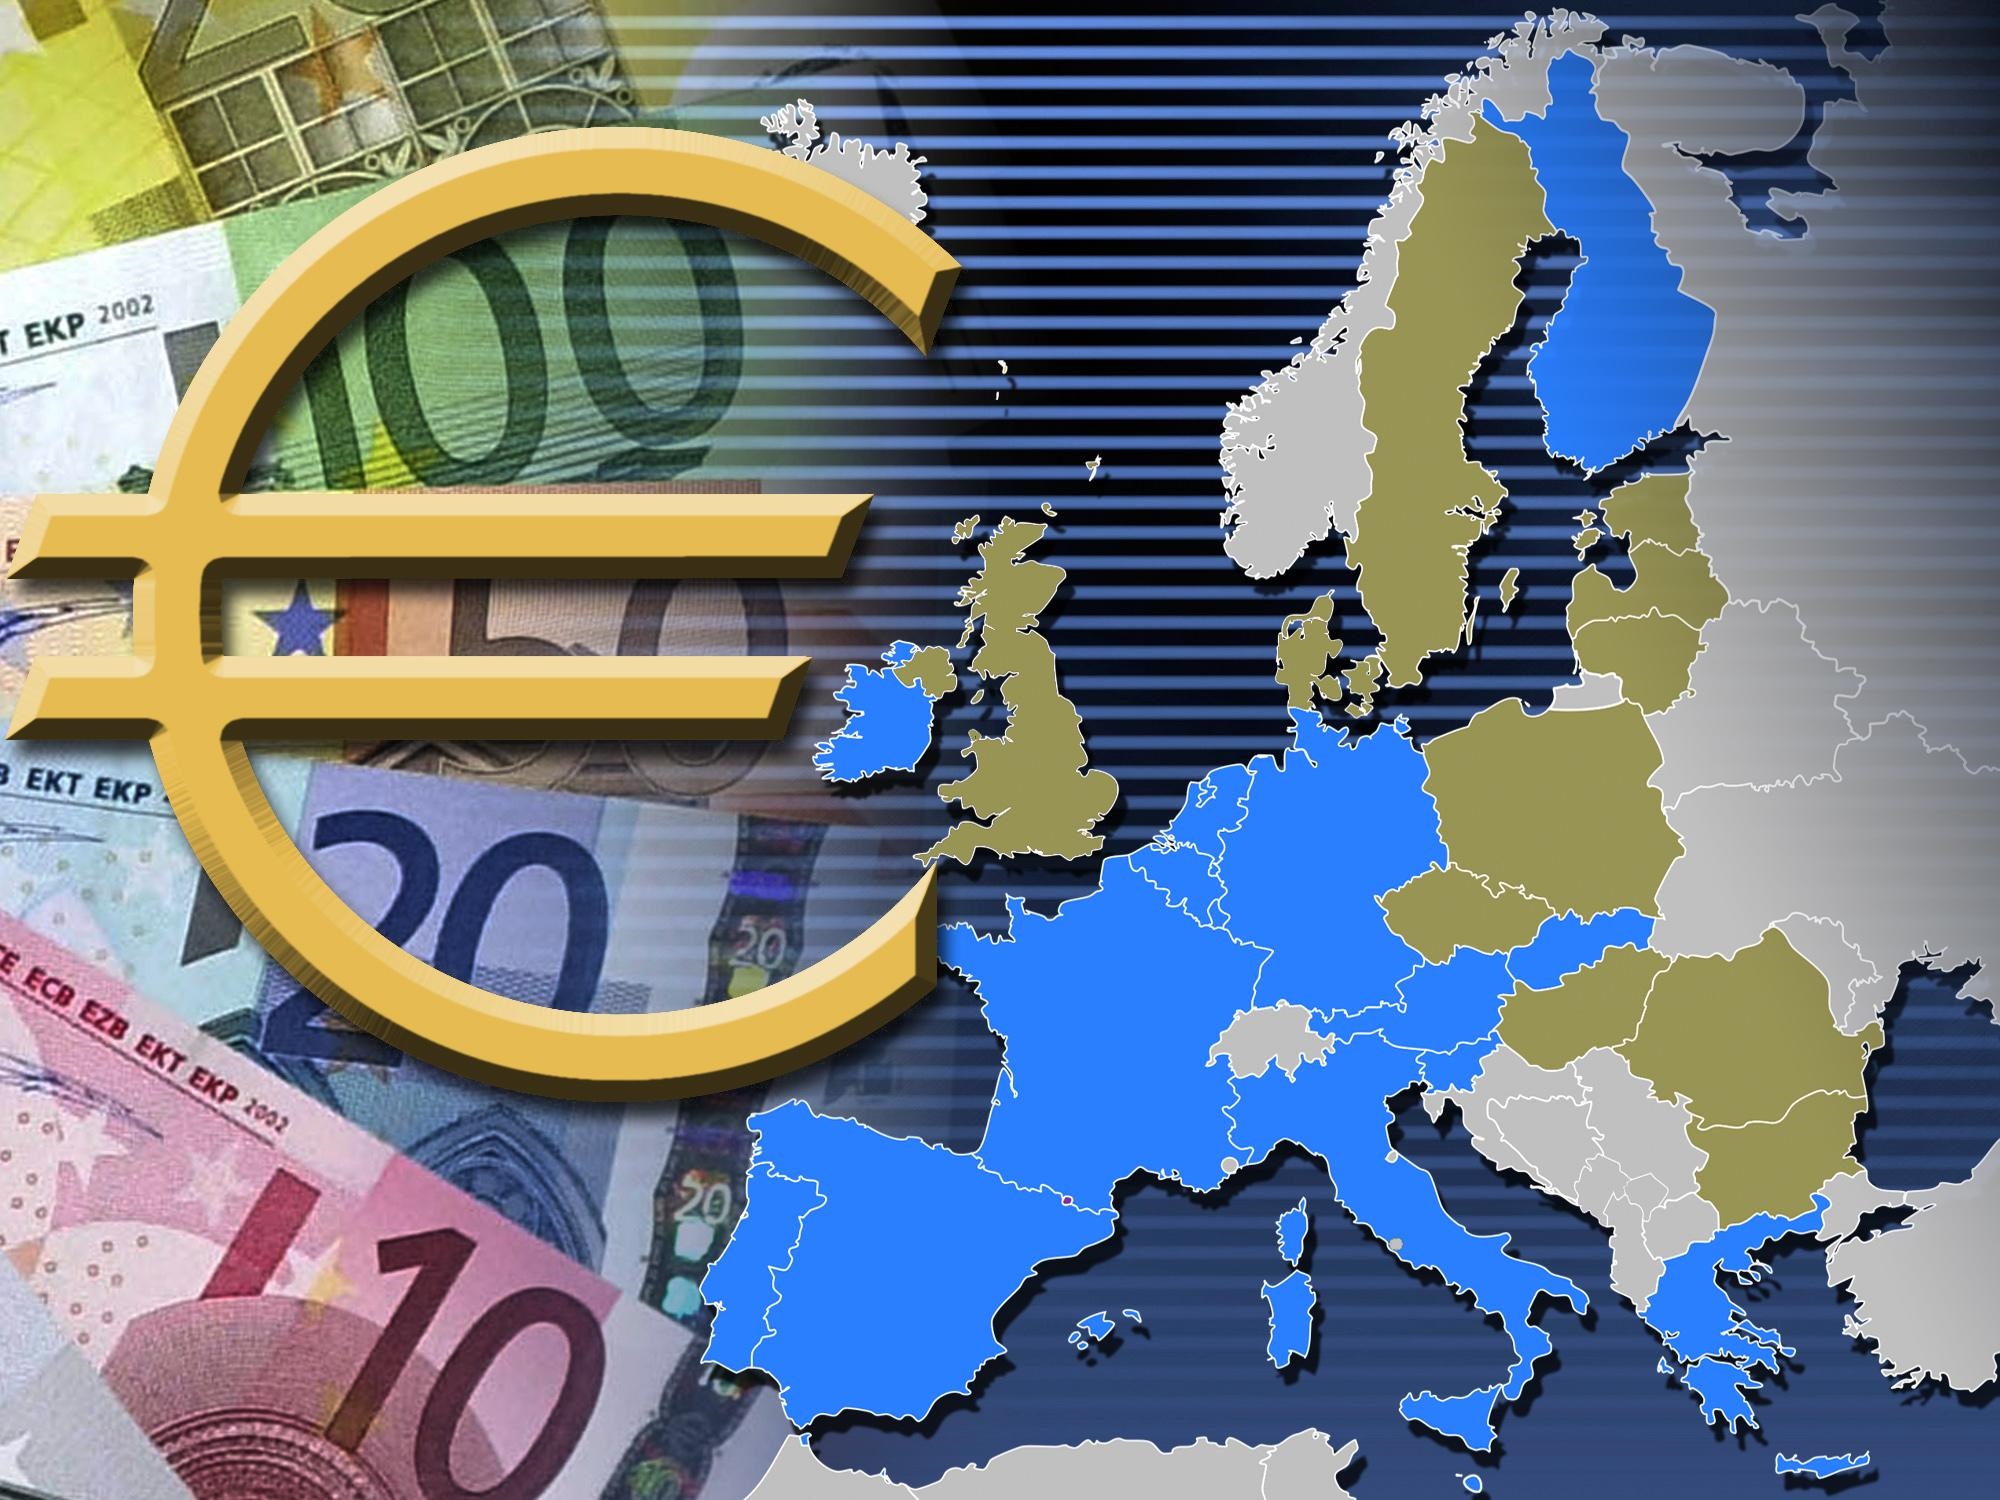 Confianza zona euro cae más de lo esperado en febrero